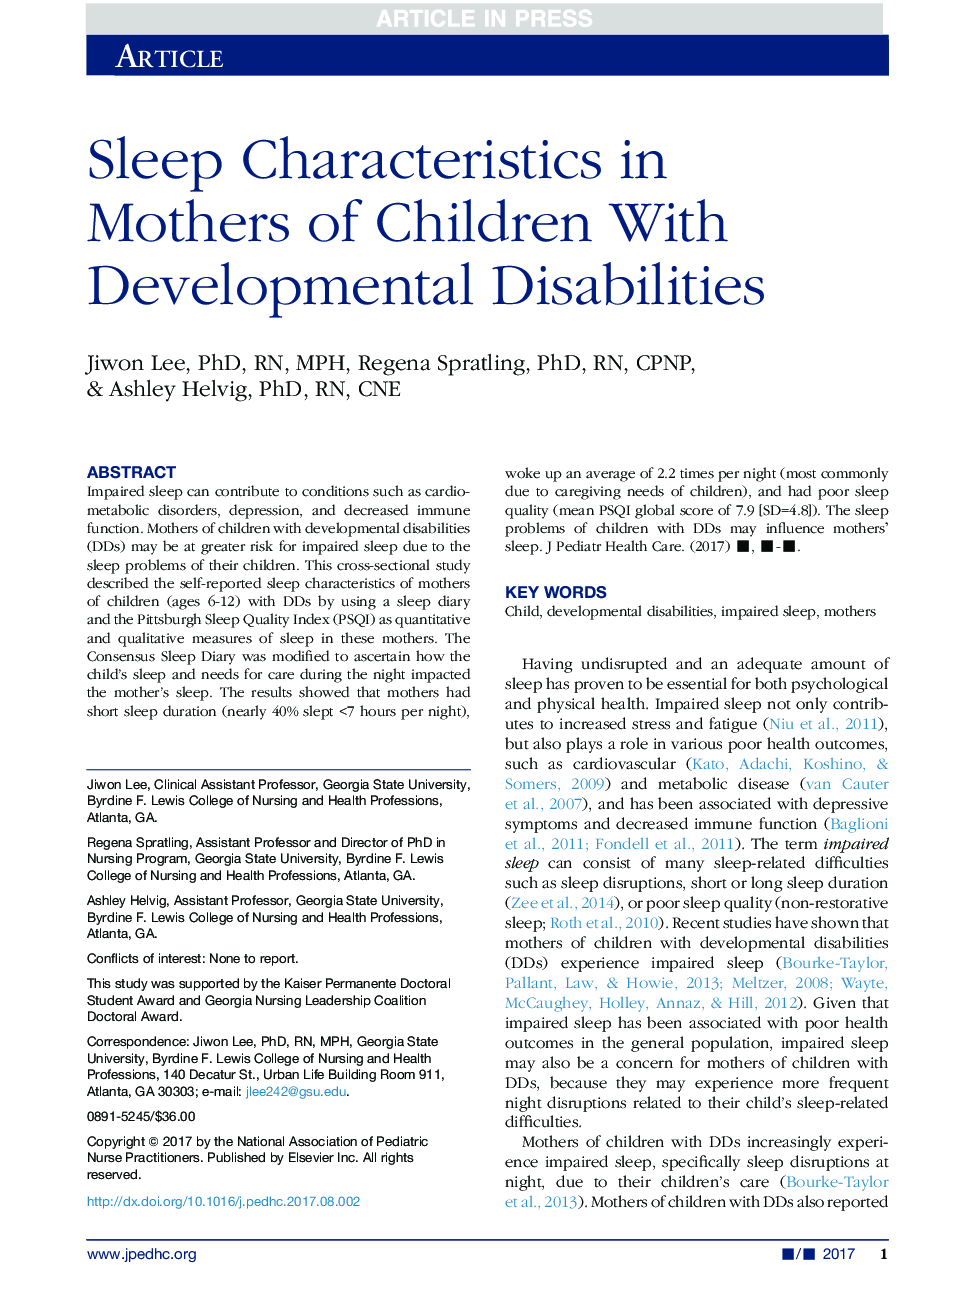 ویژگی های خواب در مادران کودکان مبتلا به اختلالات رشد 